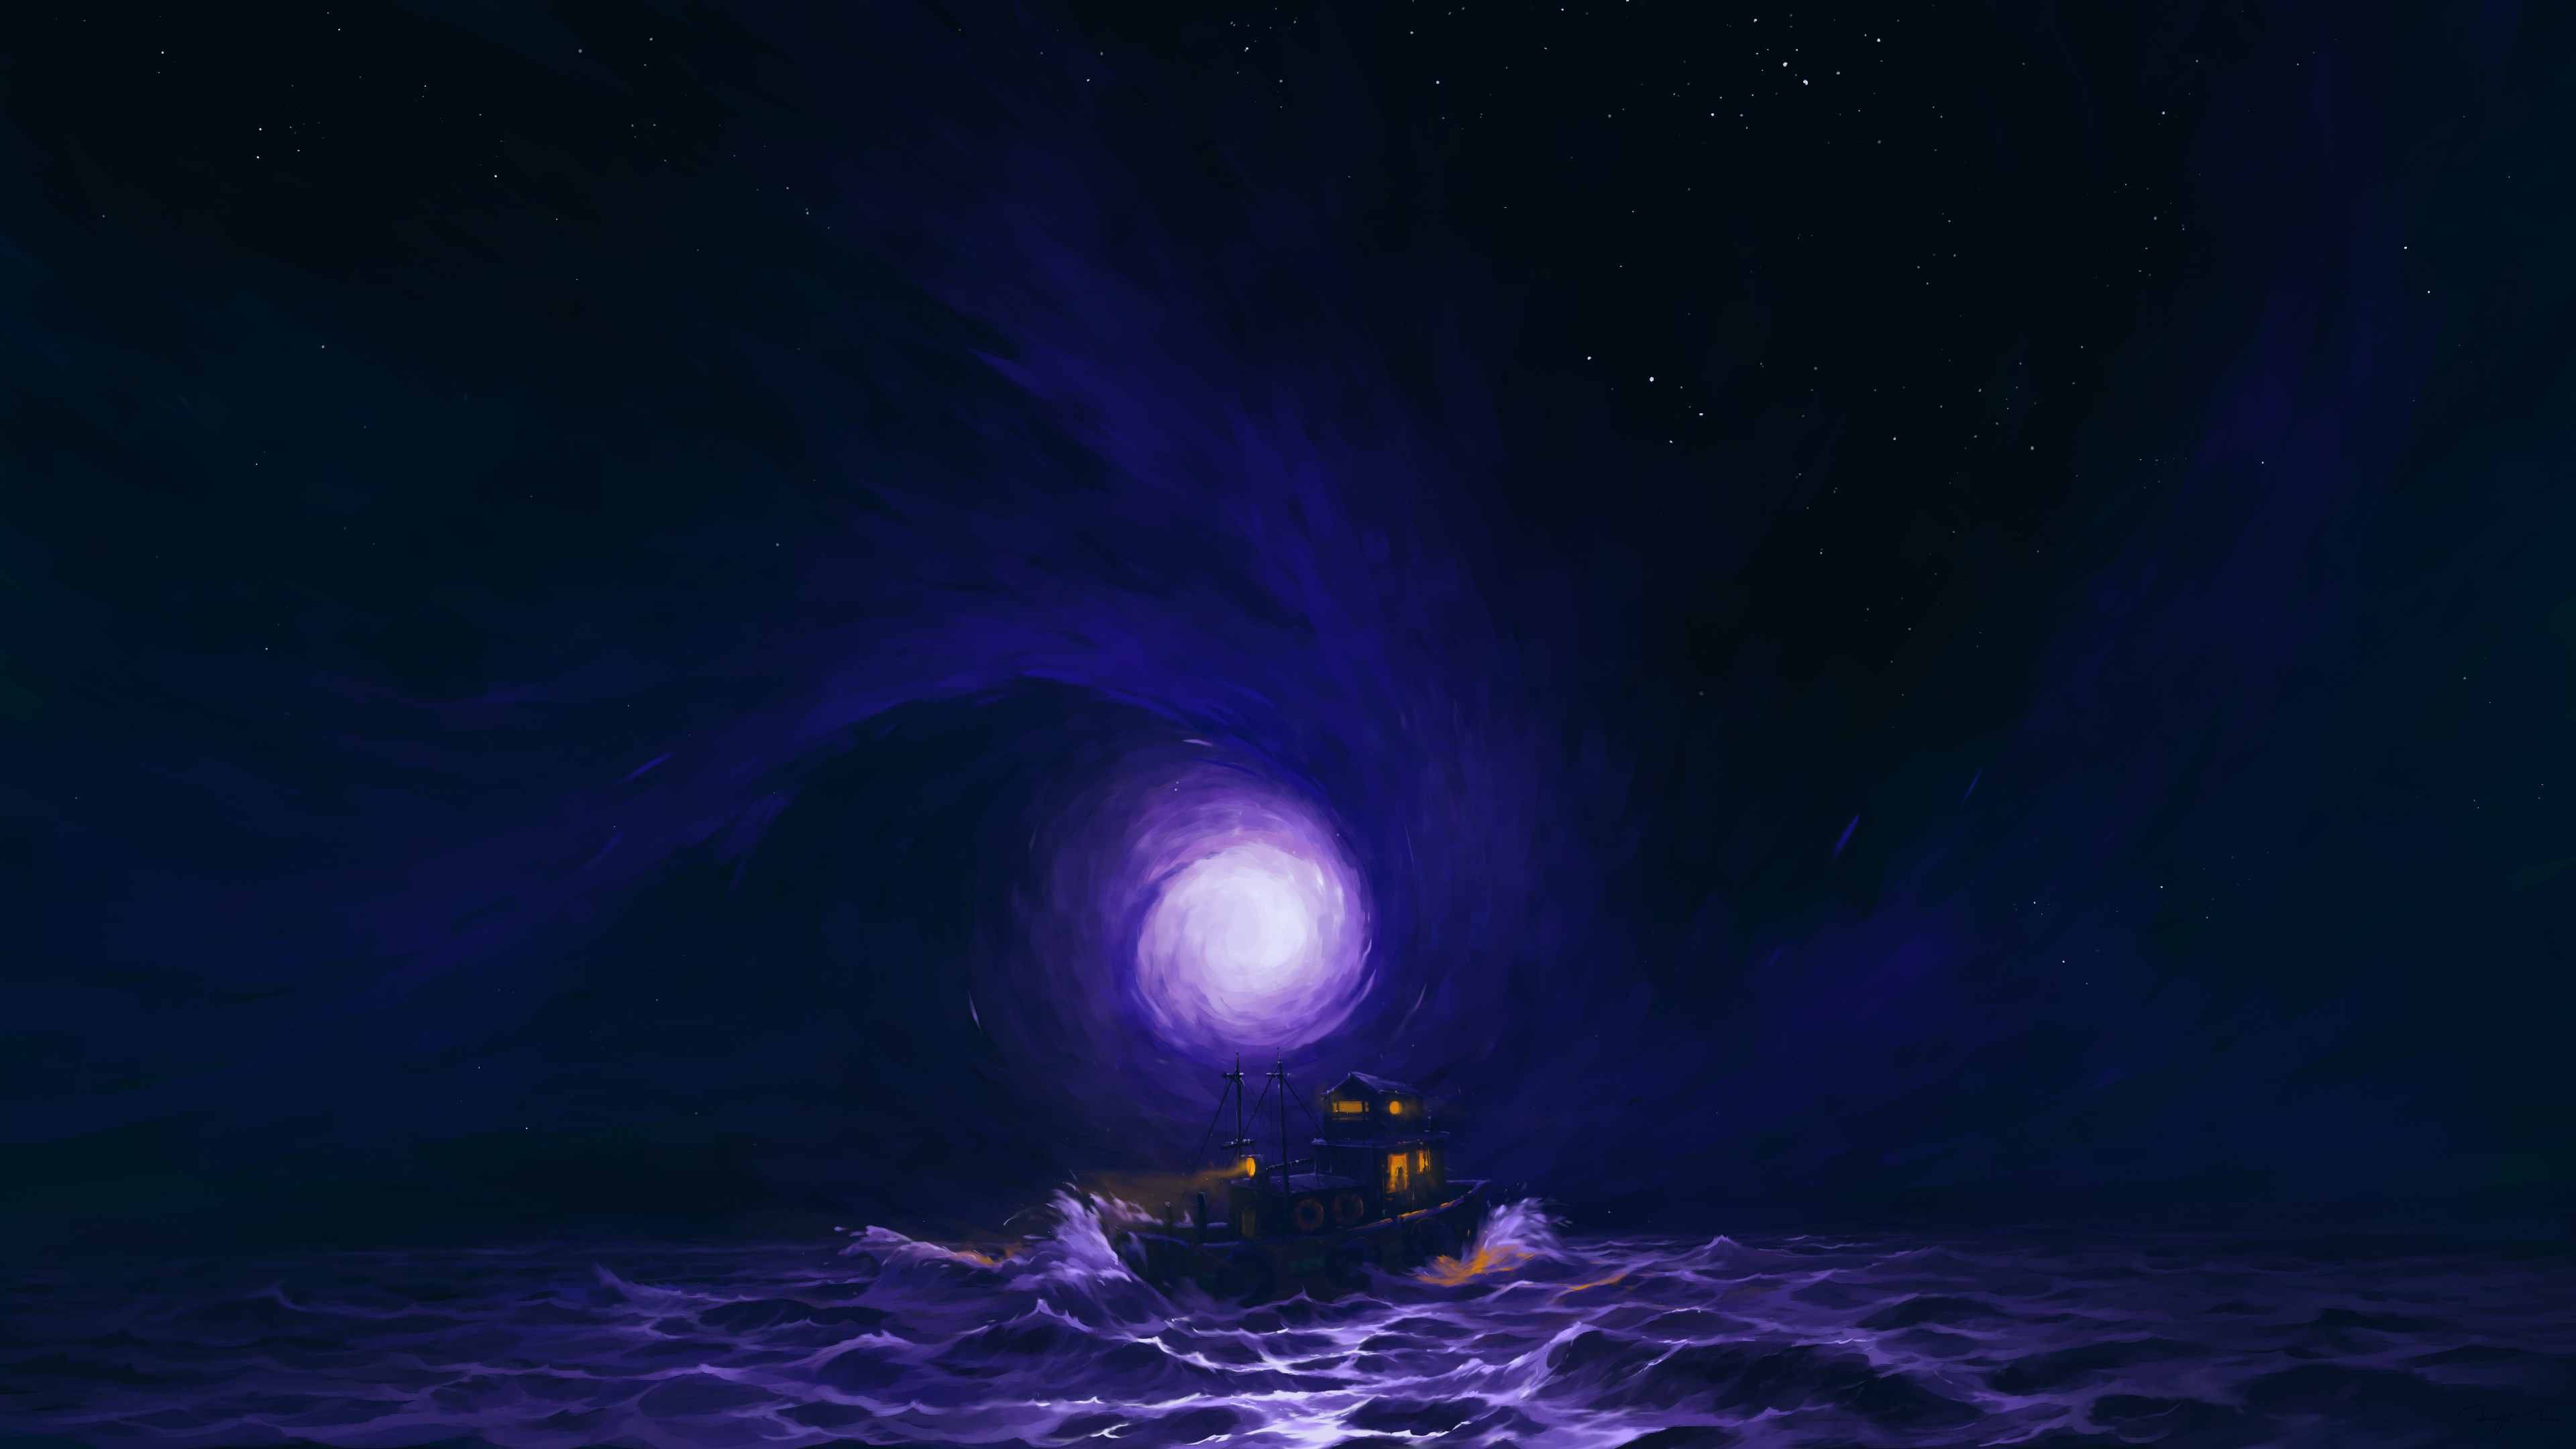 BisBiswas Digital Art Artwork Illustration Landscape Nature Clouds Sea Water Boat Stars Moon Lights  3840x2160